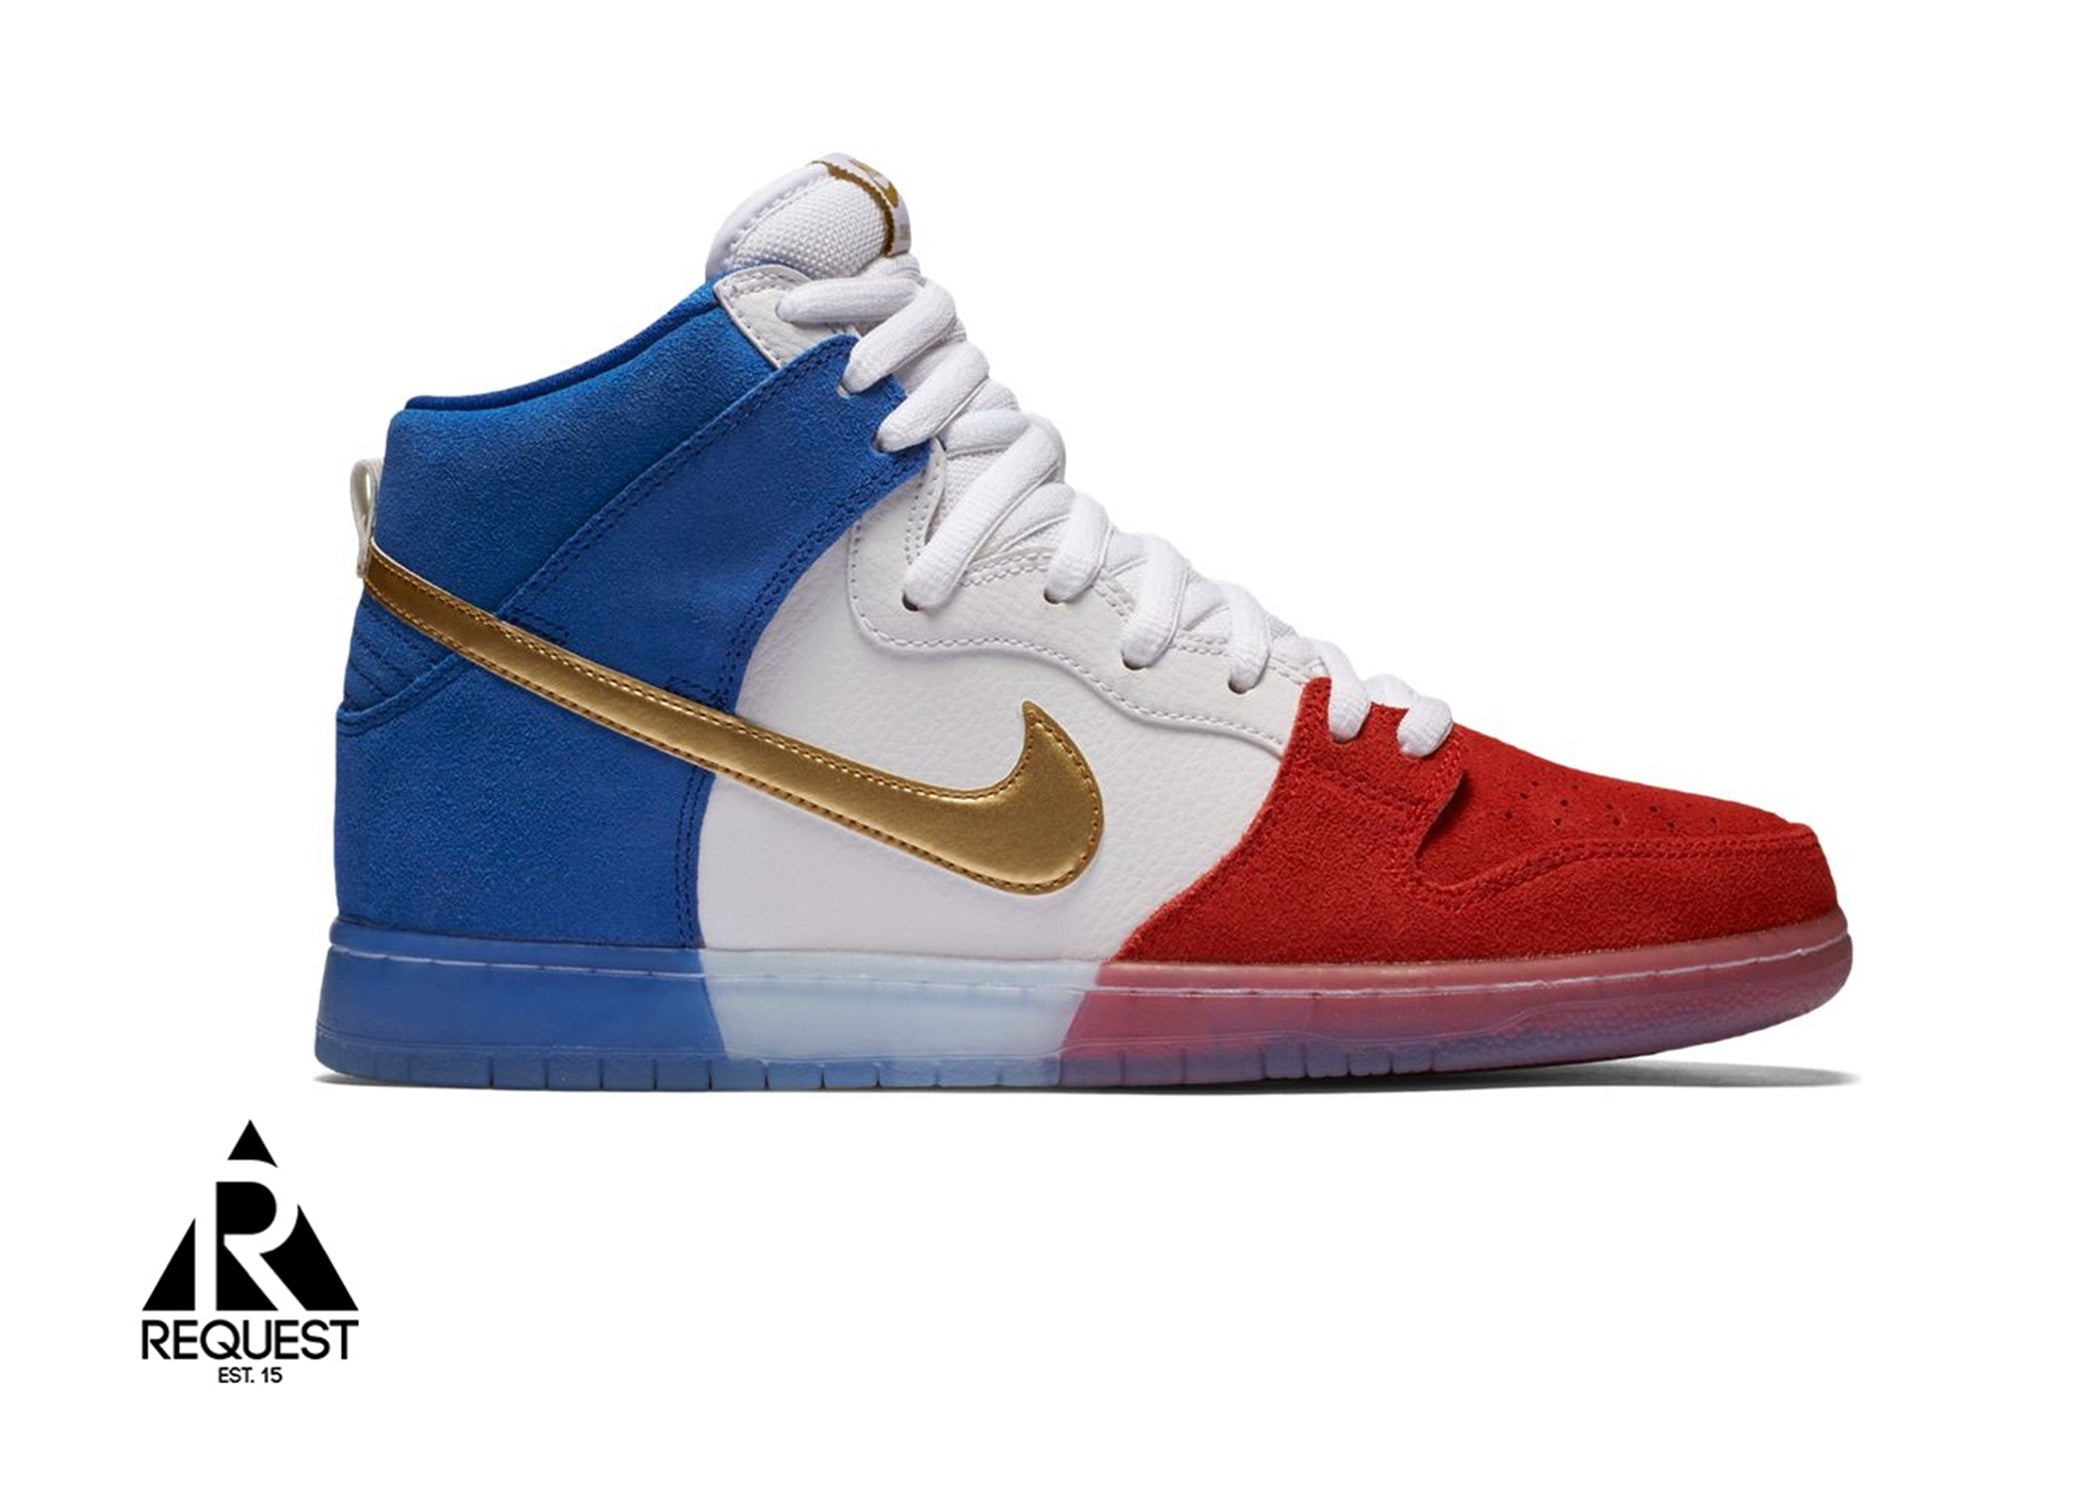 Nike SB Dunk High “Tri-color USA”